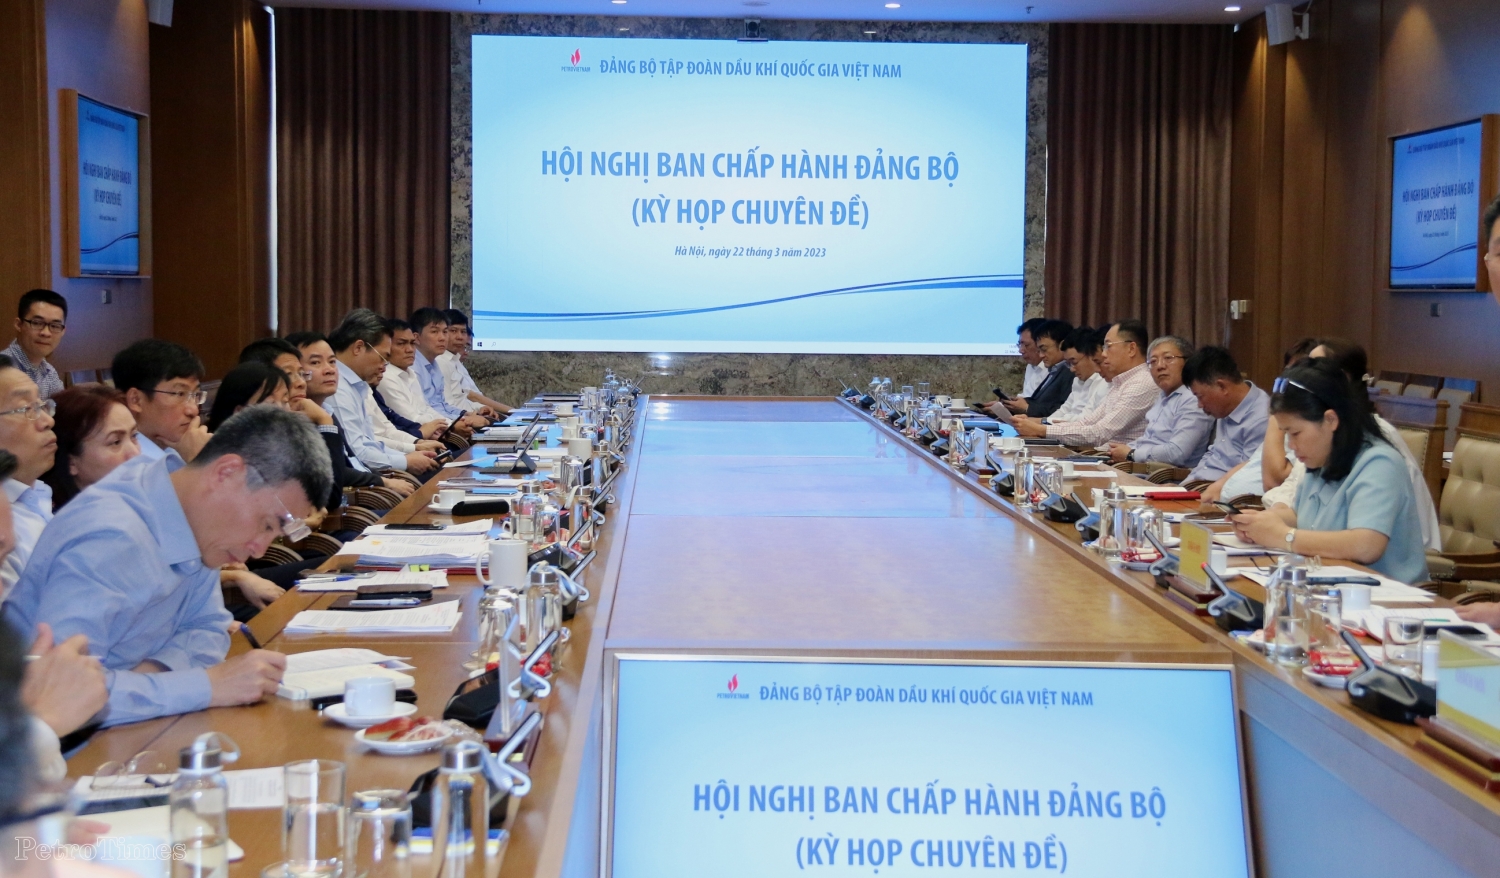 Đảng bộ Tập đoàn Dầu khí Quốc gia Việt Nam tổ chức Hội nghị Ban Chấp hành (Kỳ họp chuyên đề)